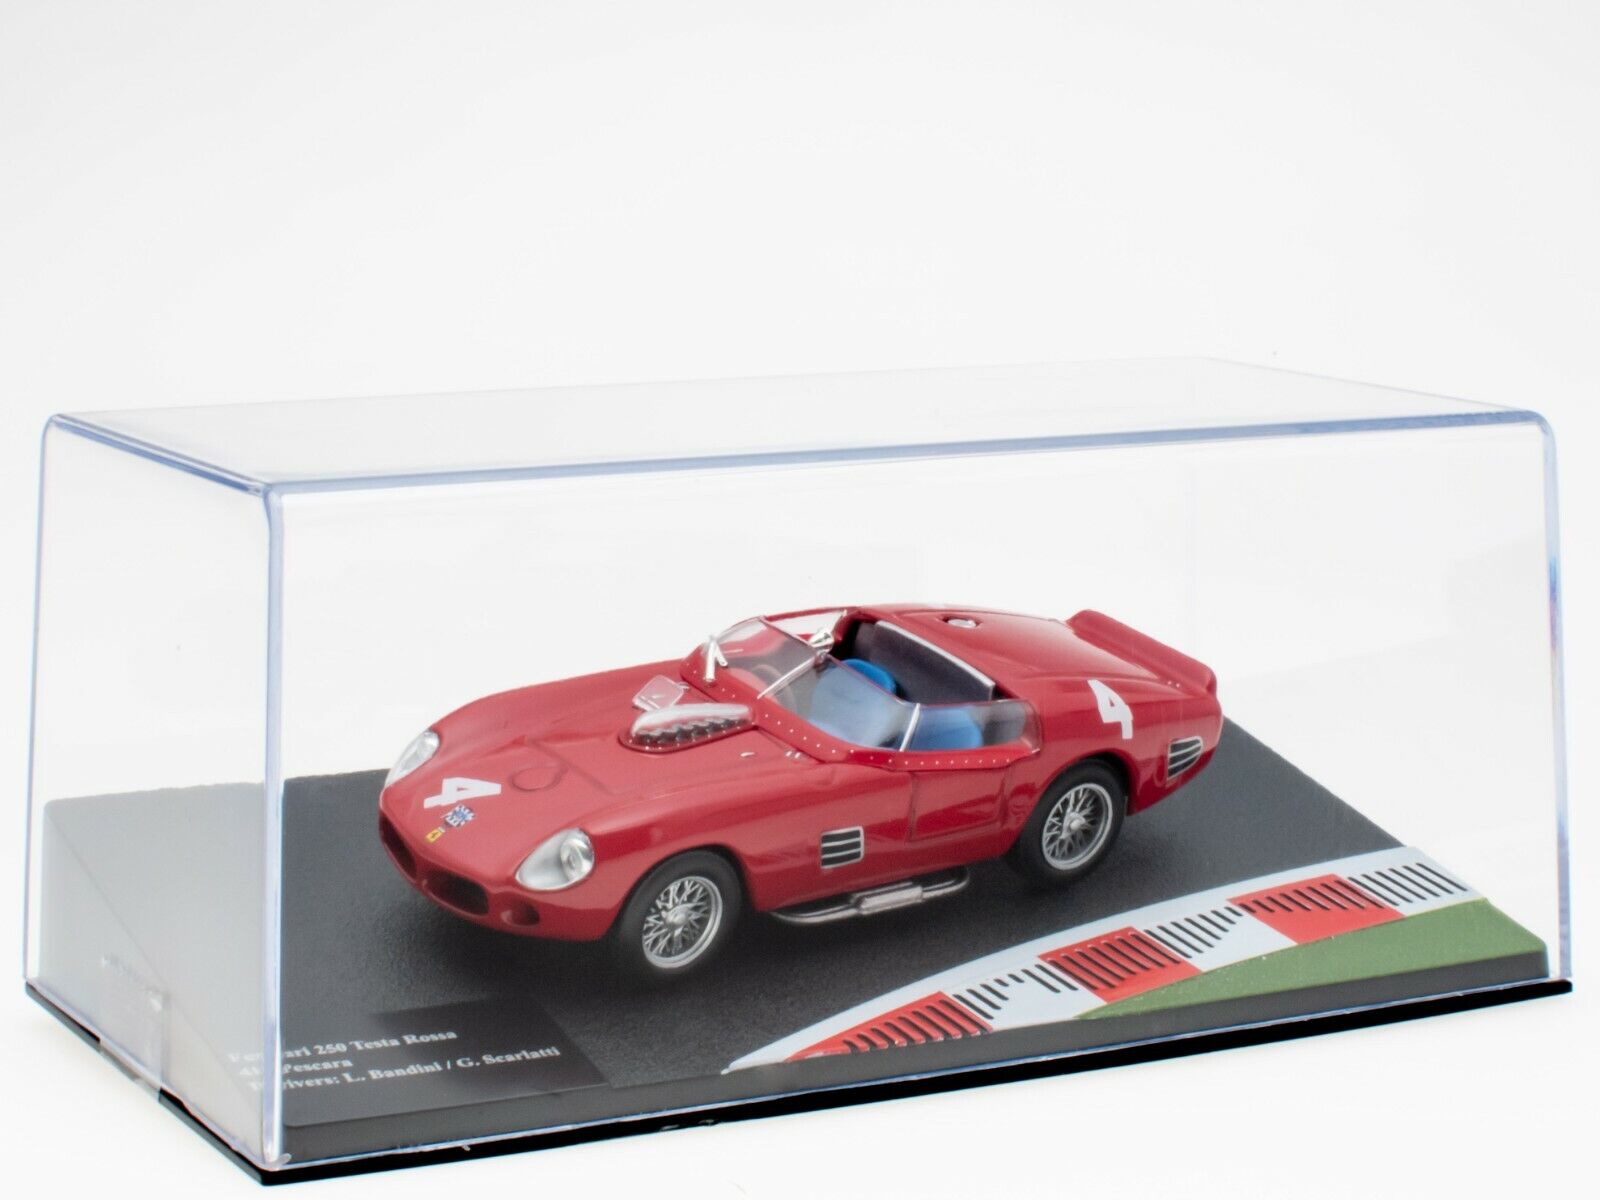 Ferrari 250 Testa Rossa 4h Pescara 1961 - 1:43 Ixo Racing Collection FR033